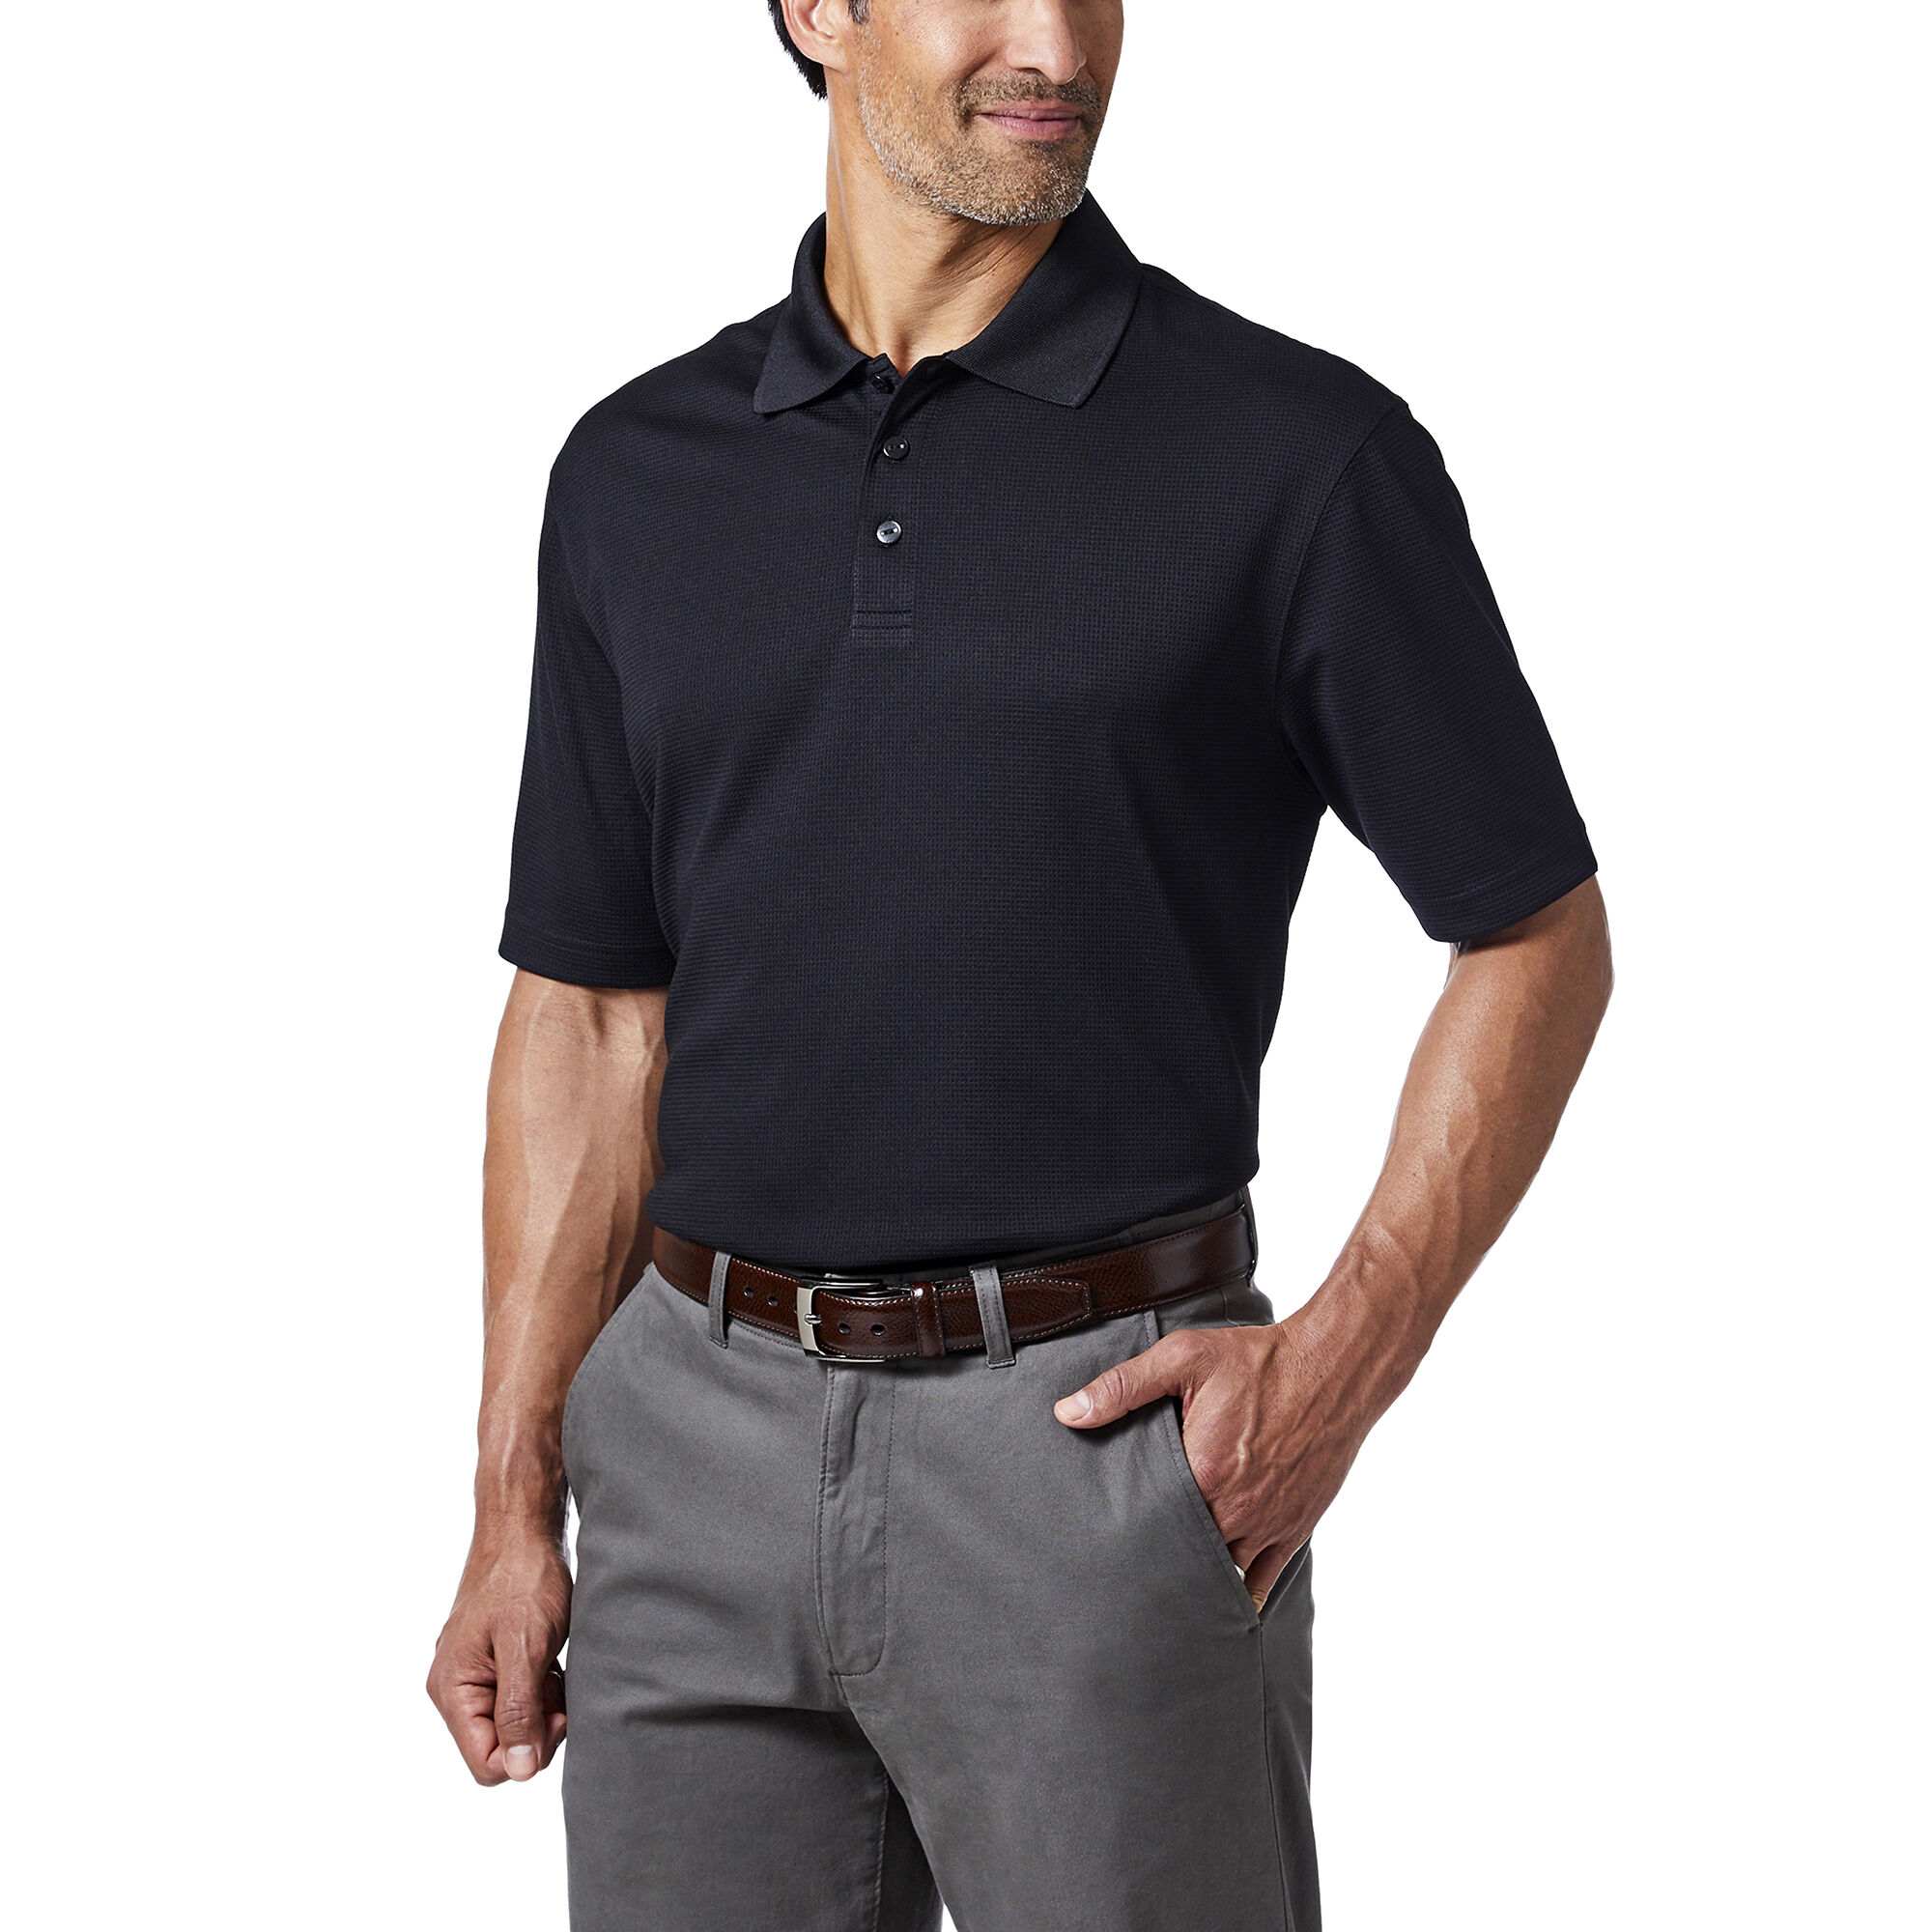 Haggar Cool 18 Golf Polo Black (027197 Clothing Shirts & Tops) photo